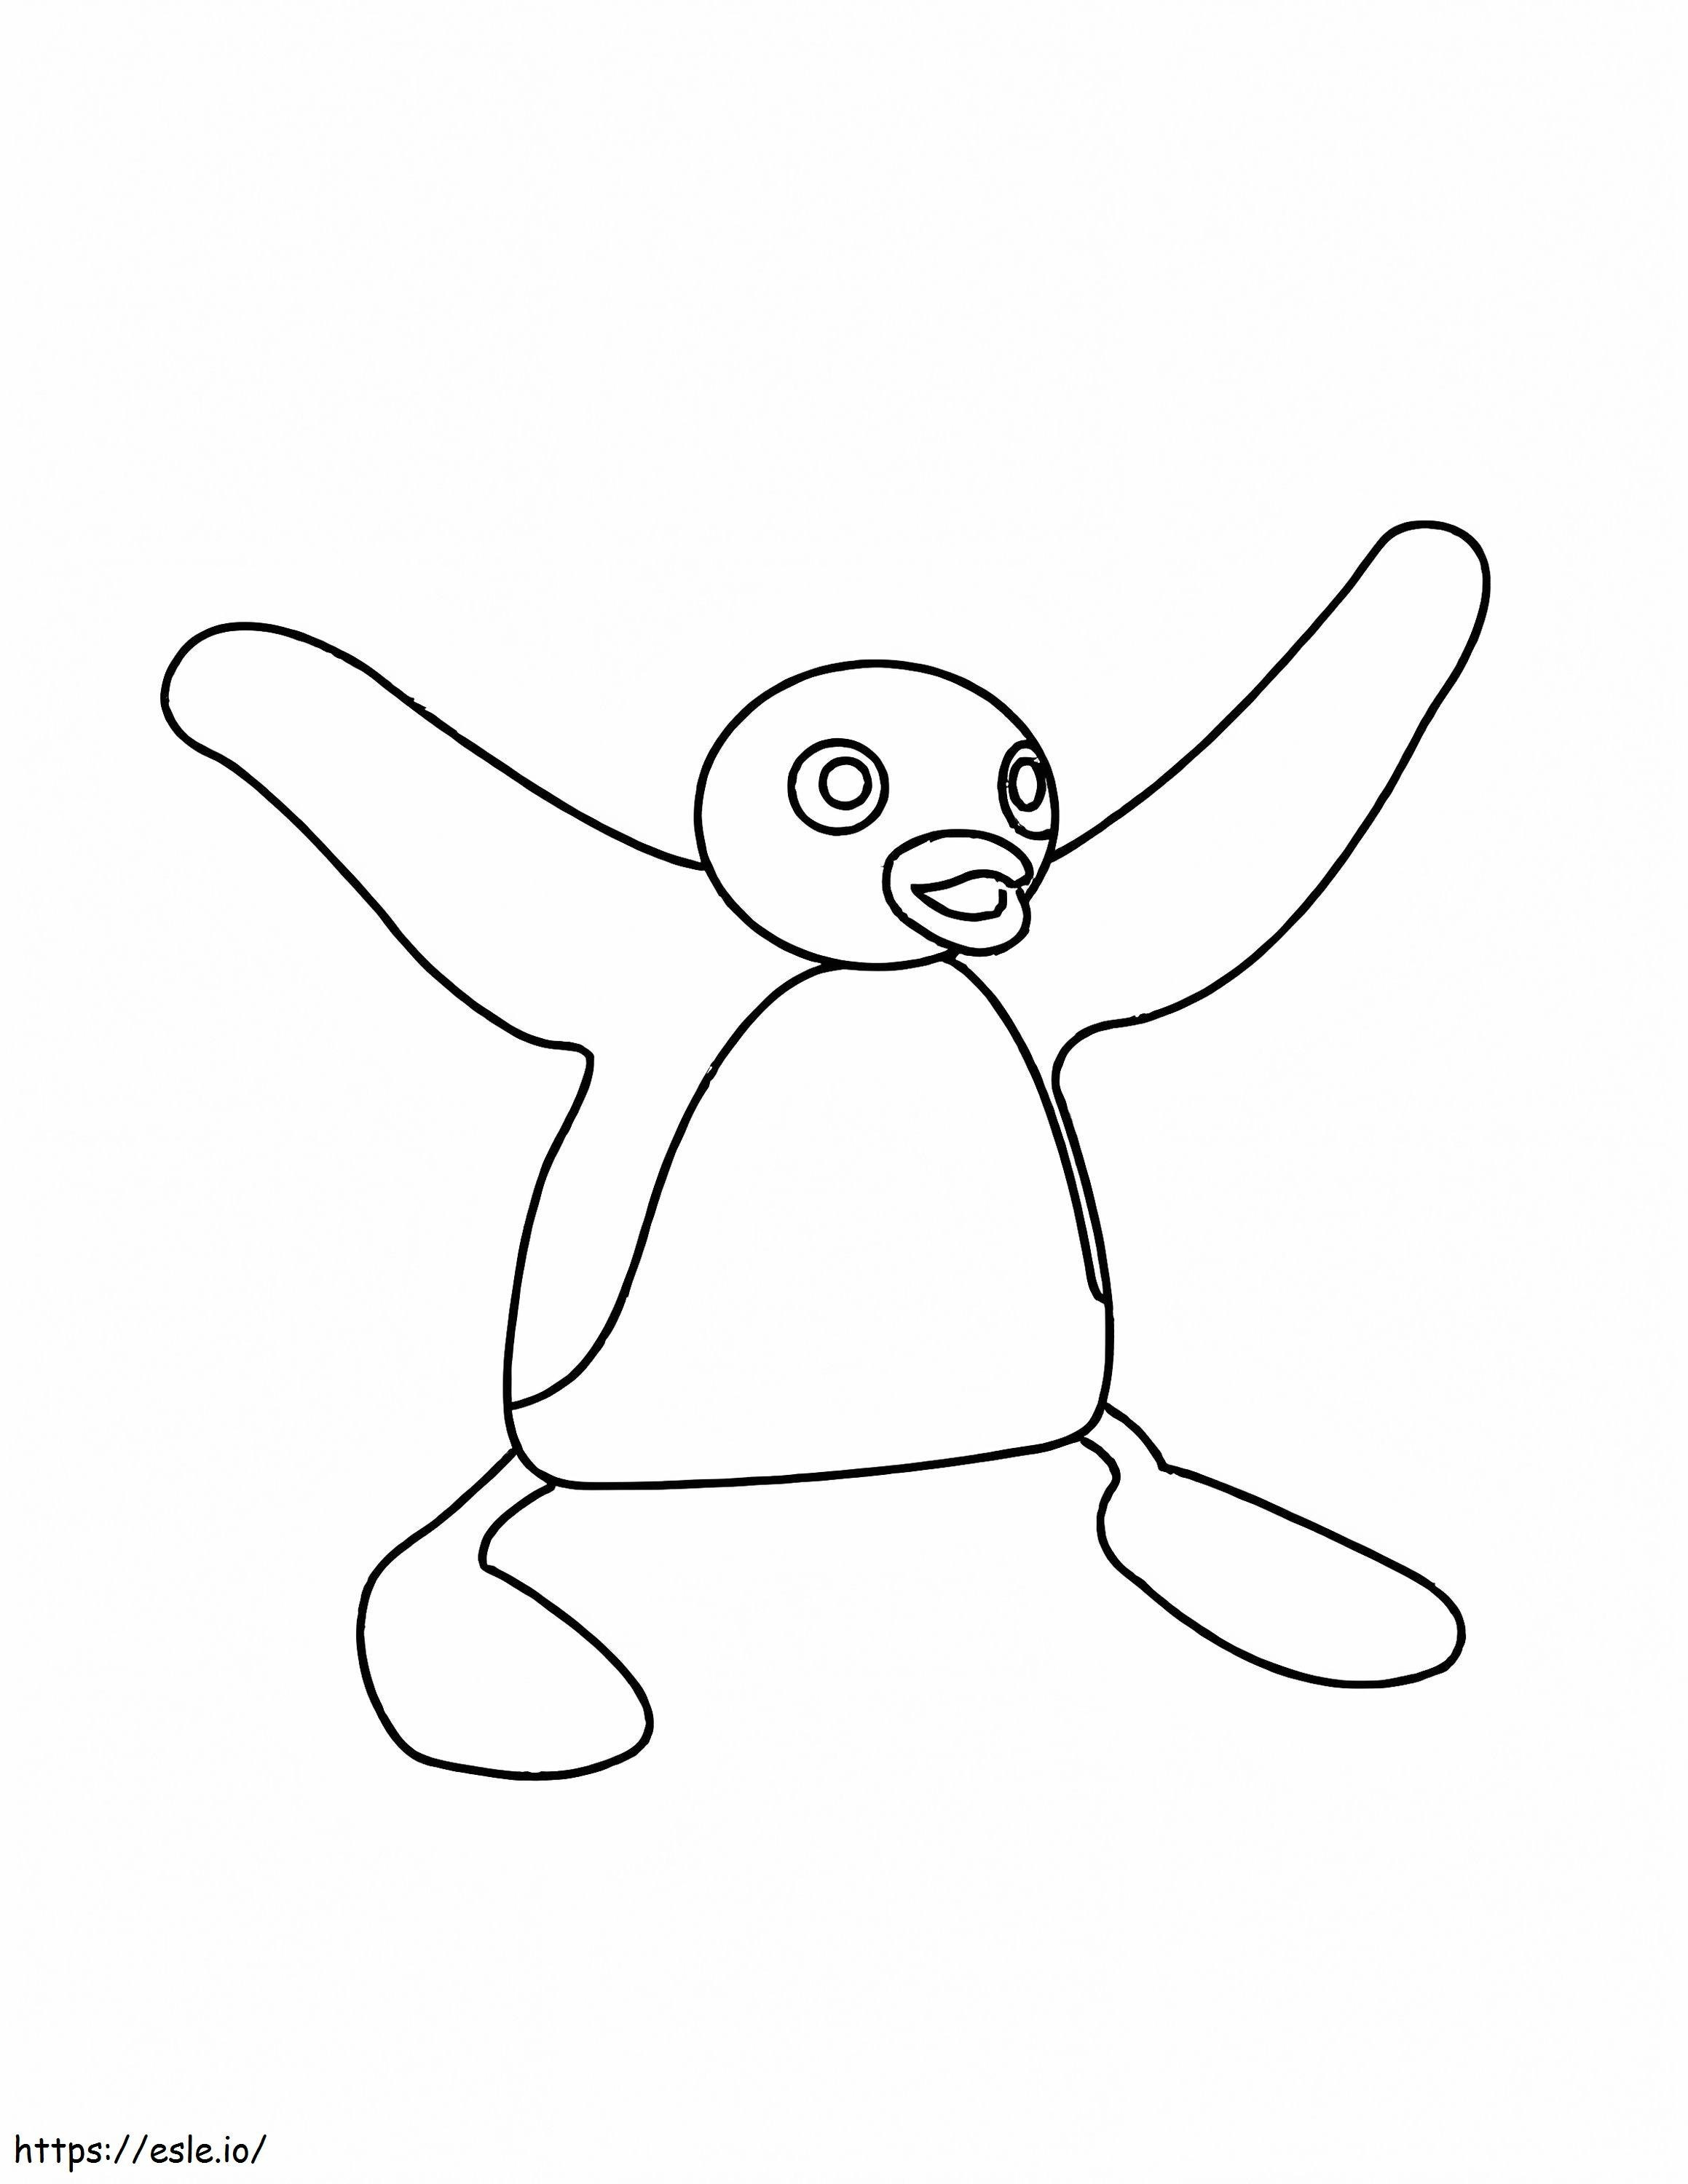 Happy Pingu coloring page